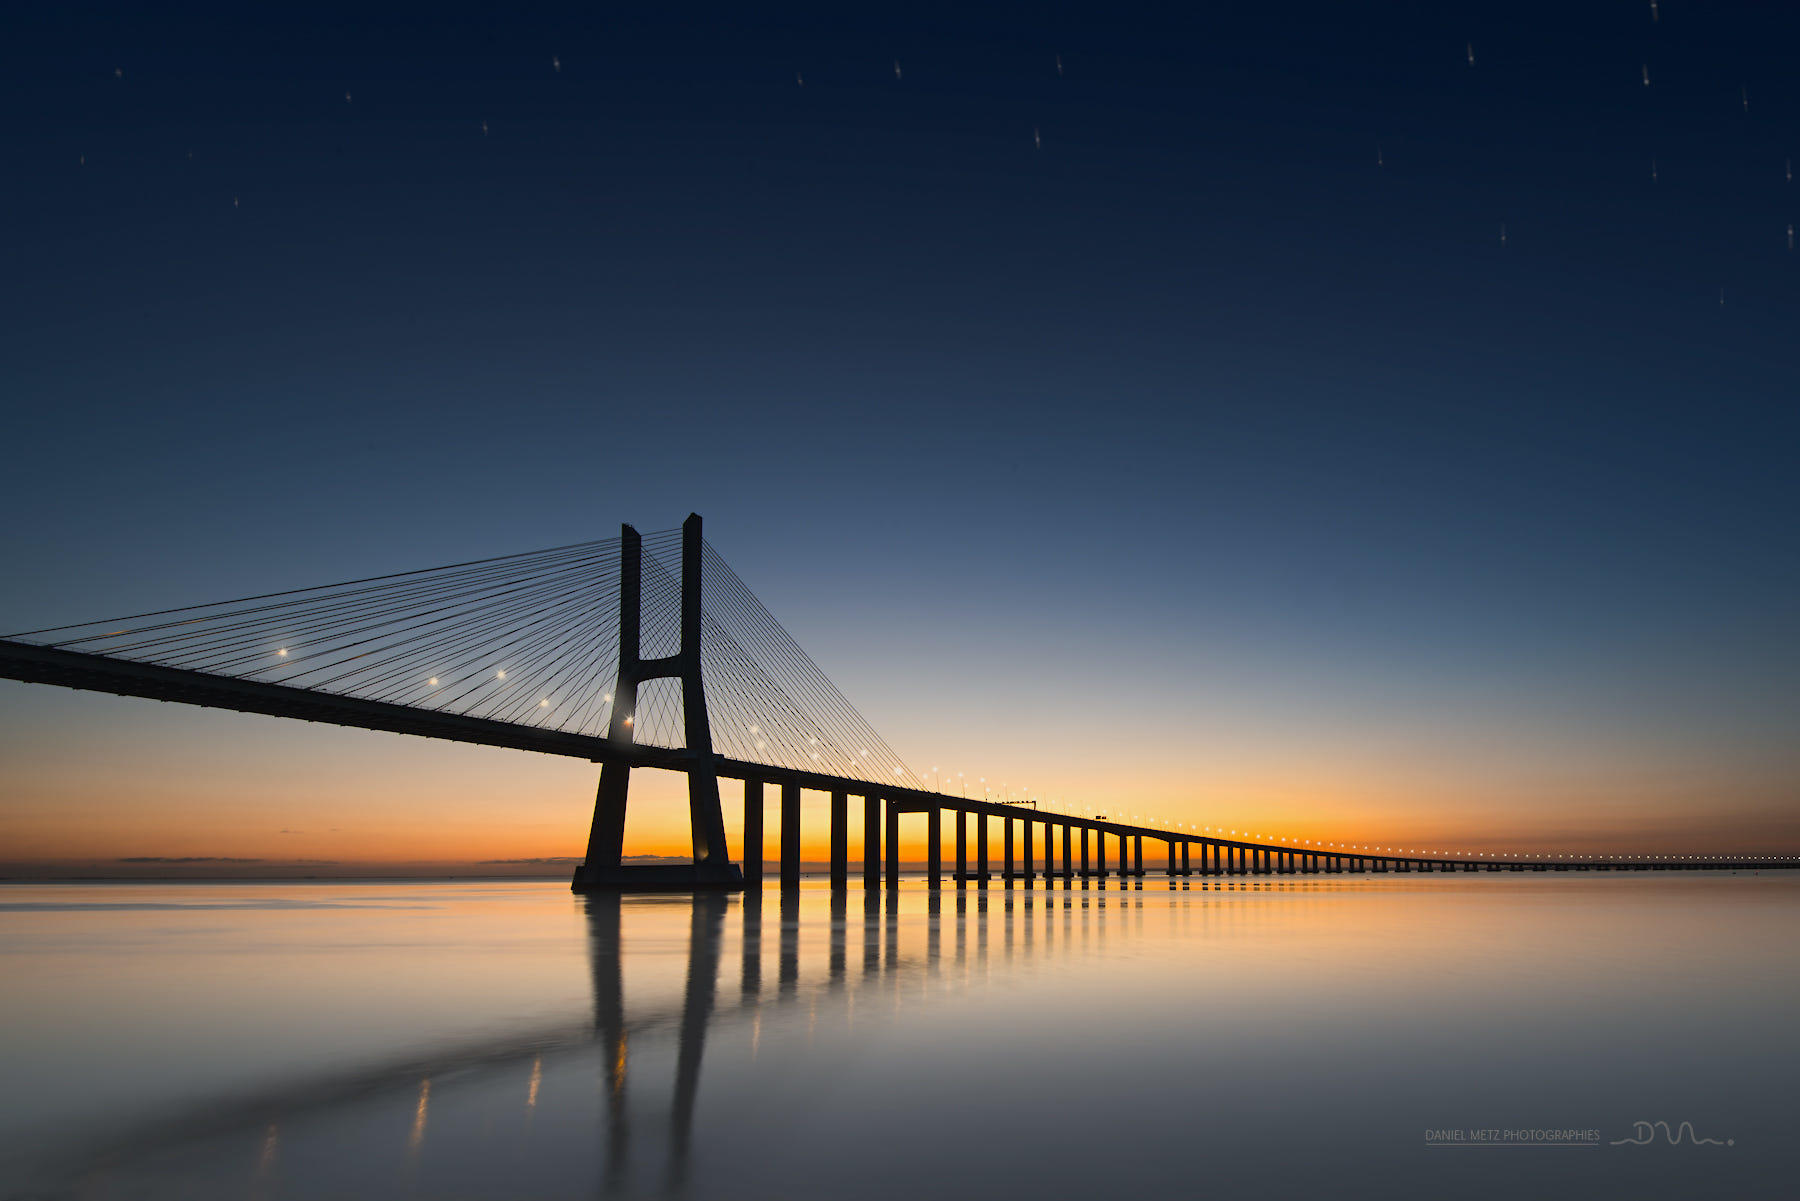 Lisboa Bridge